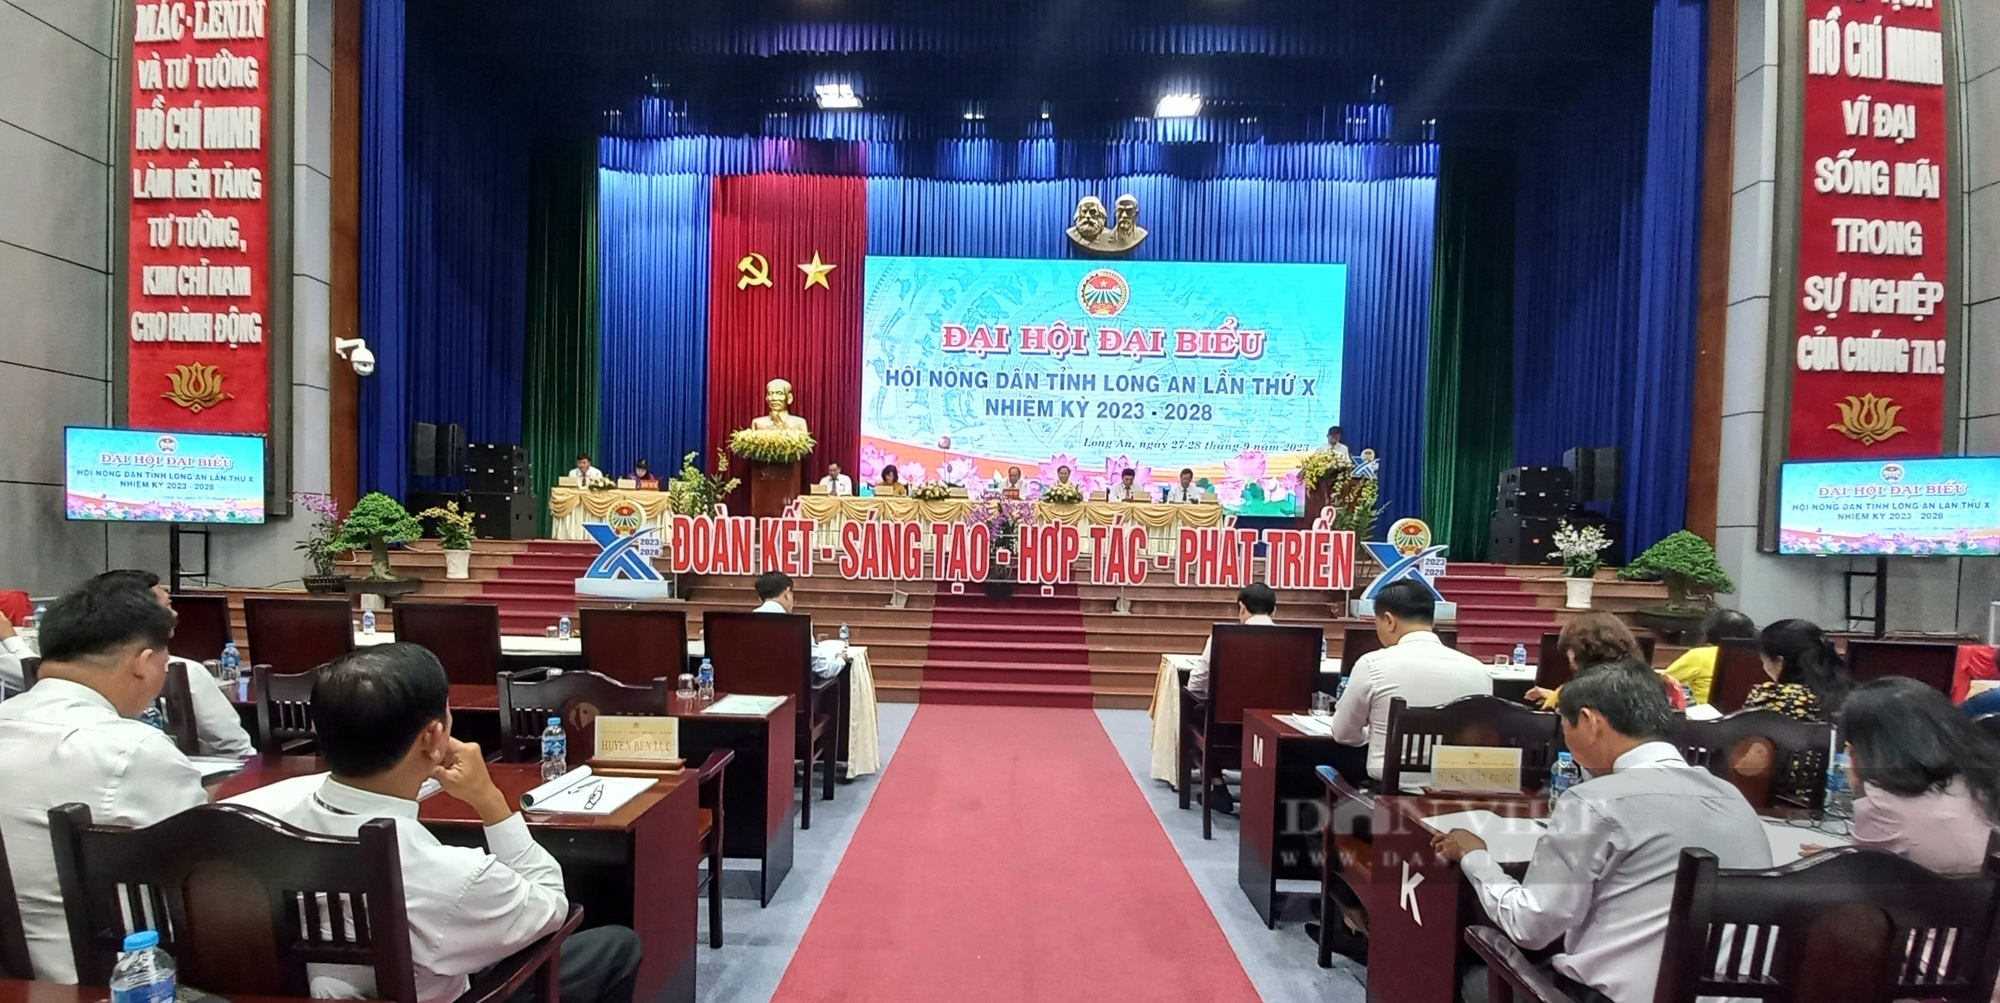 282 hội viên, nông dân ưu tú tham dự Đại hội Nông dân tỉnh Long An, nhiệm kỳ 2023 - 2028 - Ảnh 1.